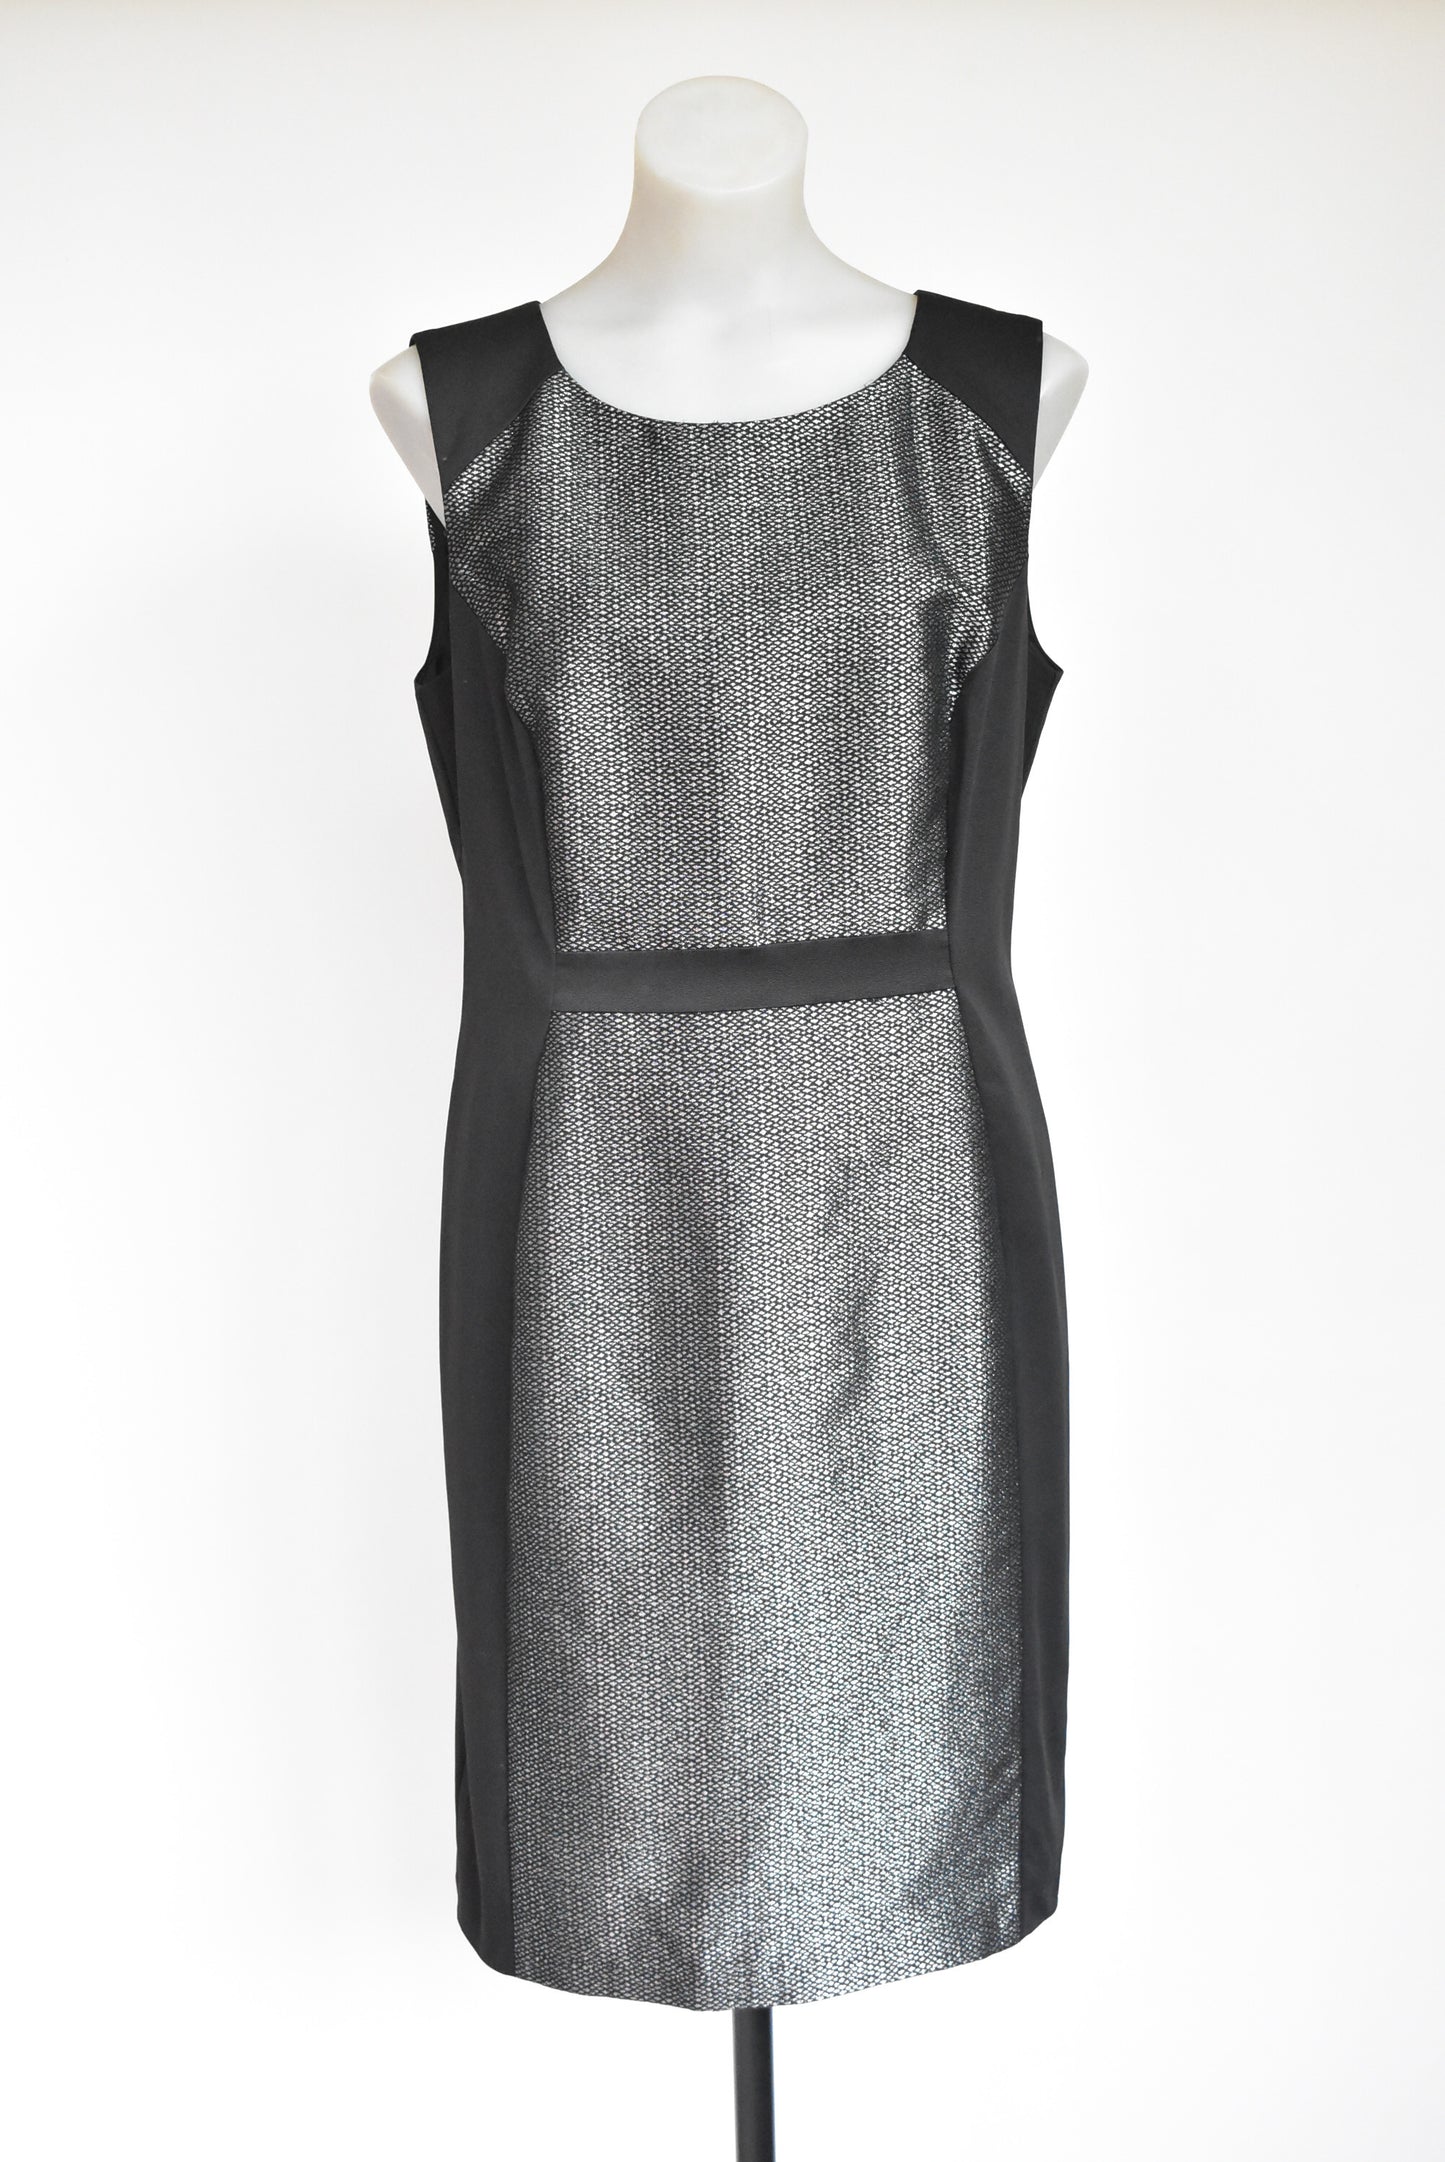 Jacqui E elegant metallic pencil dress, size M